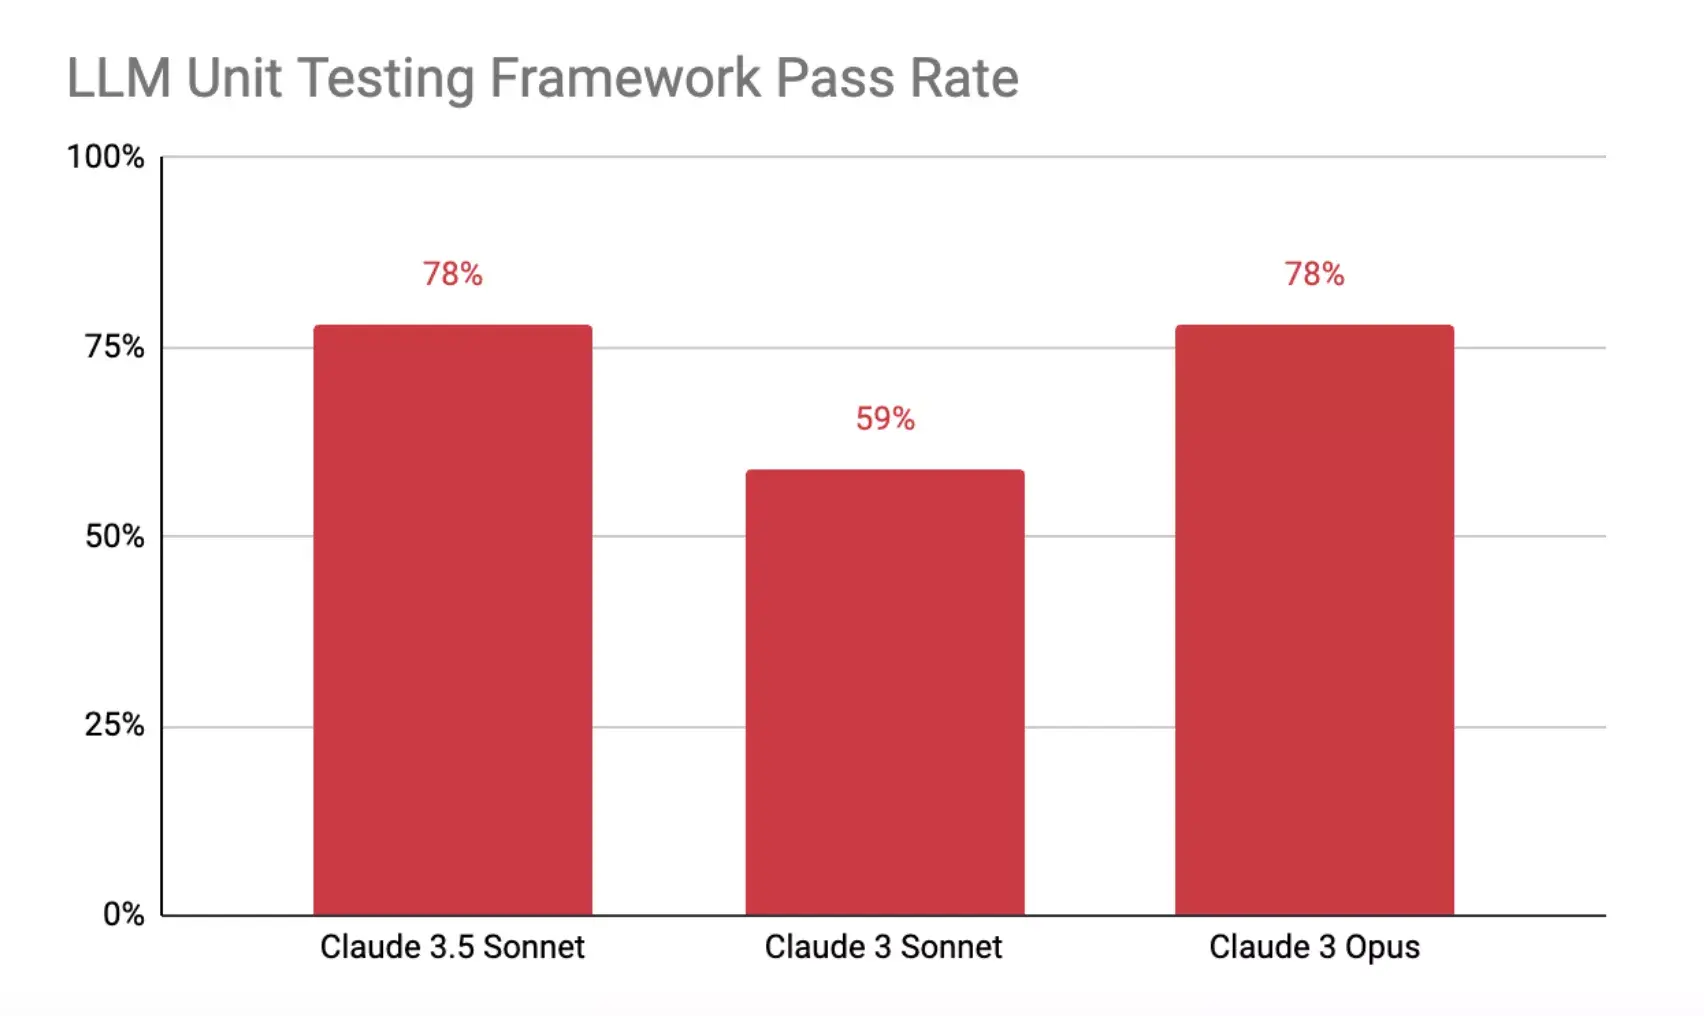 Claude 3.5 Sonnet LLM Unit Testing Framework Pass Rate chart